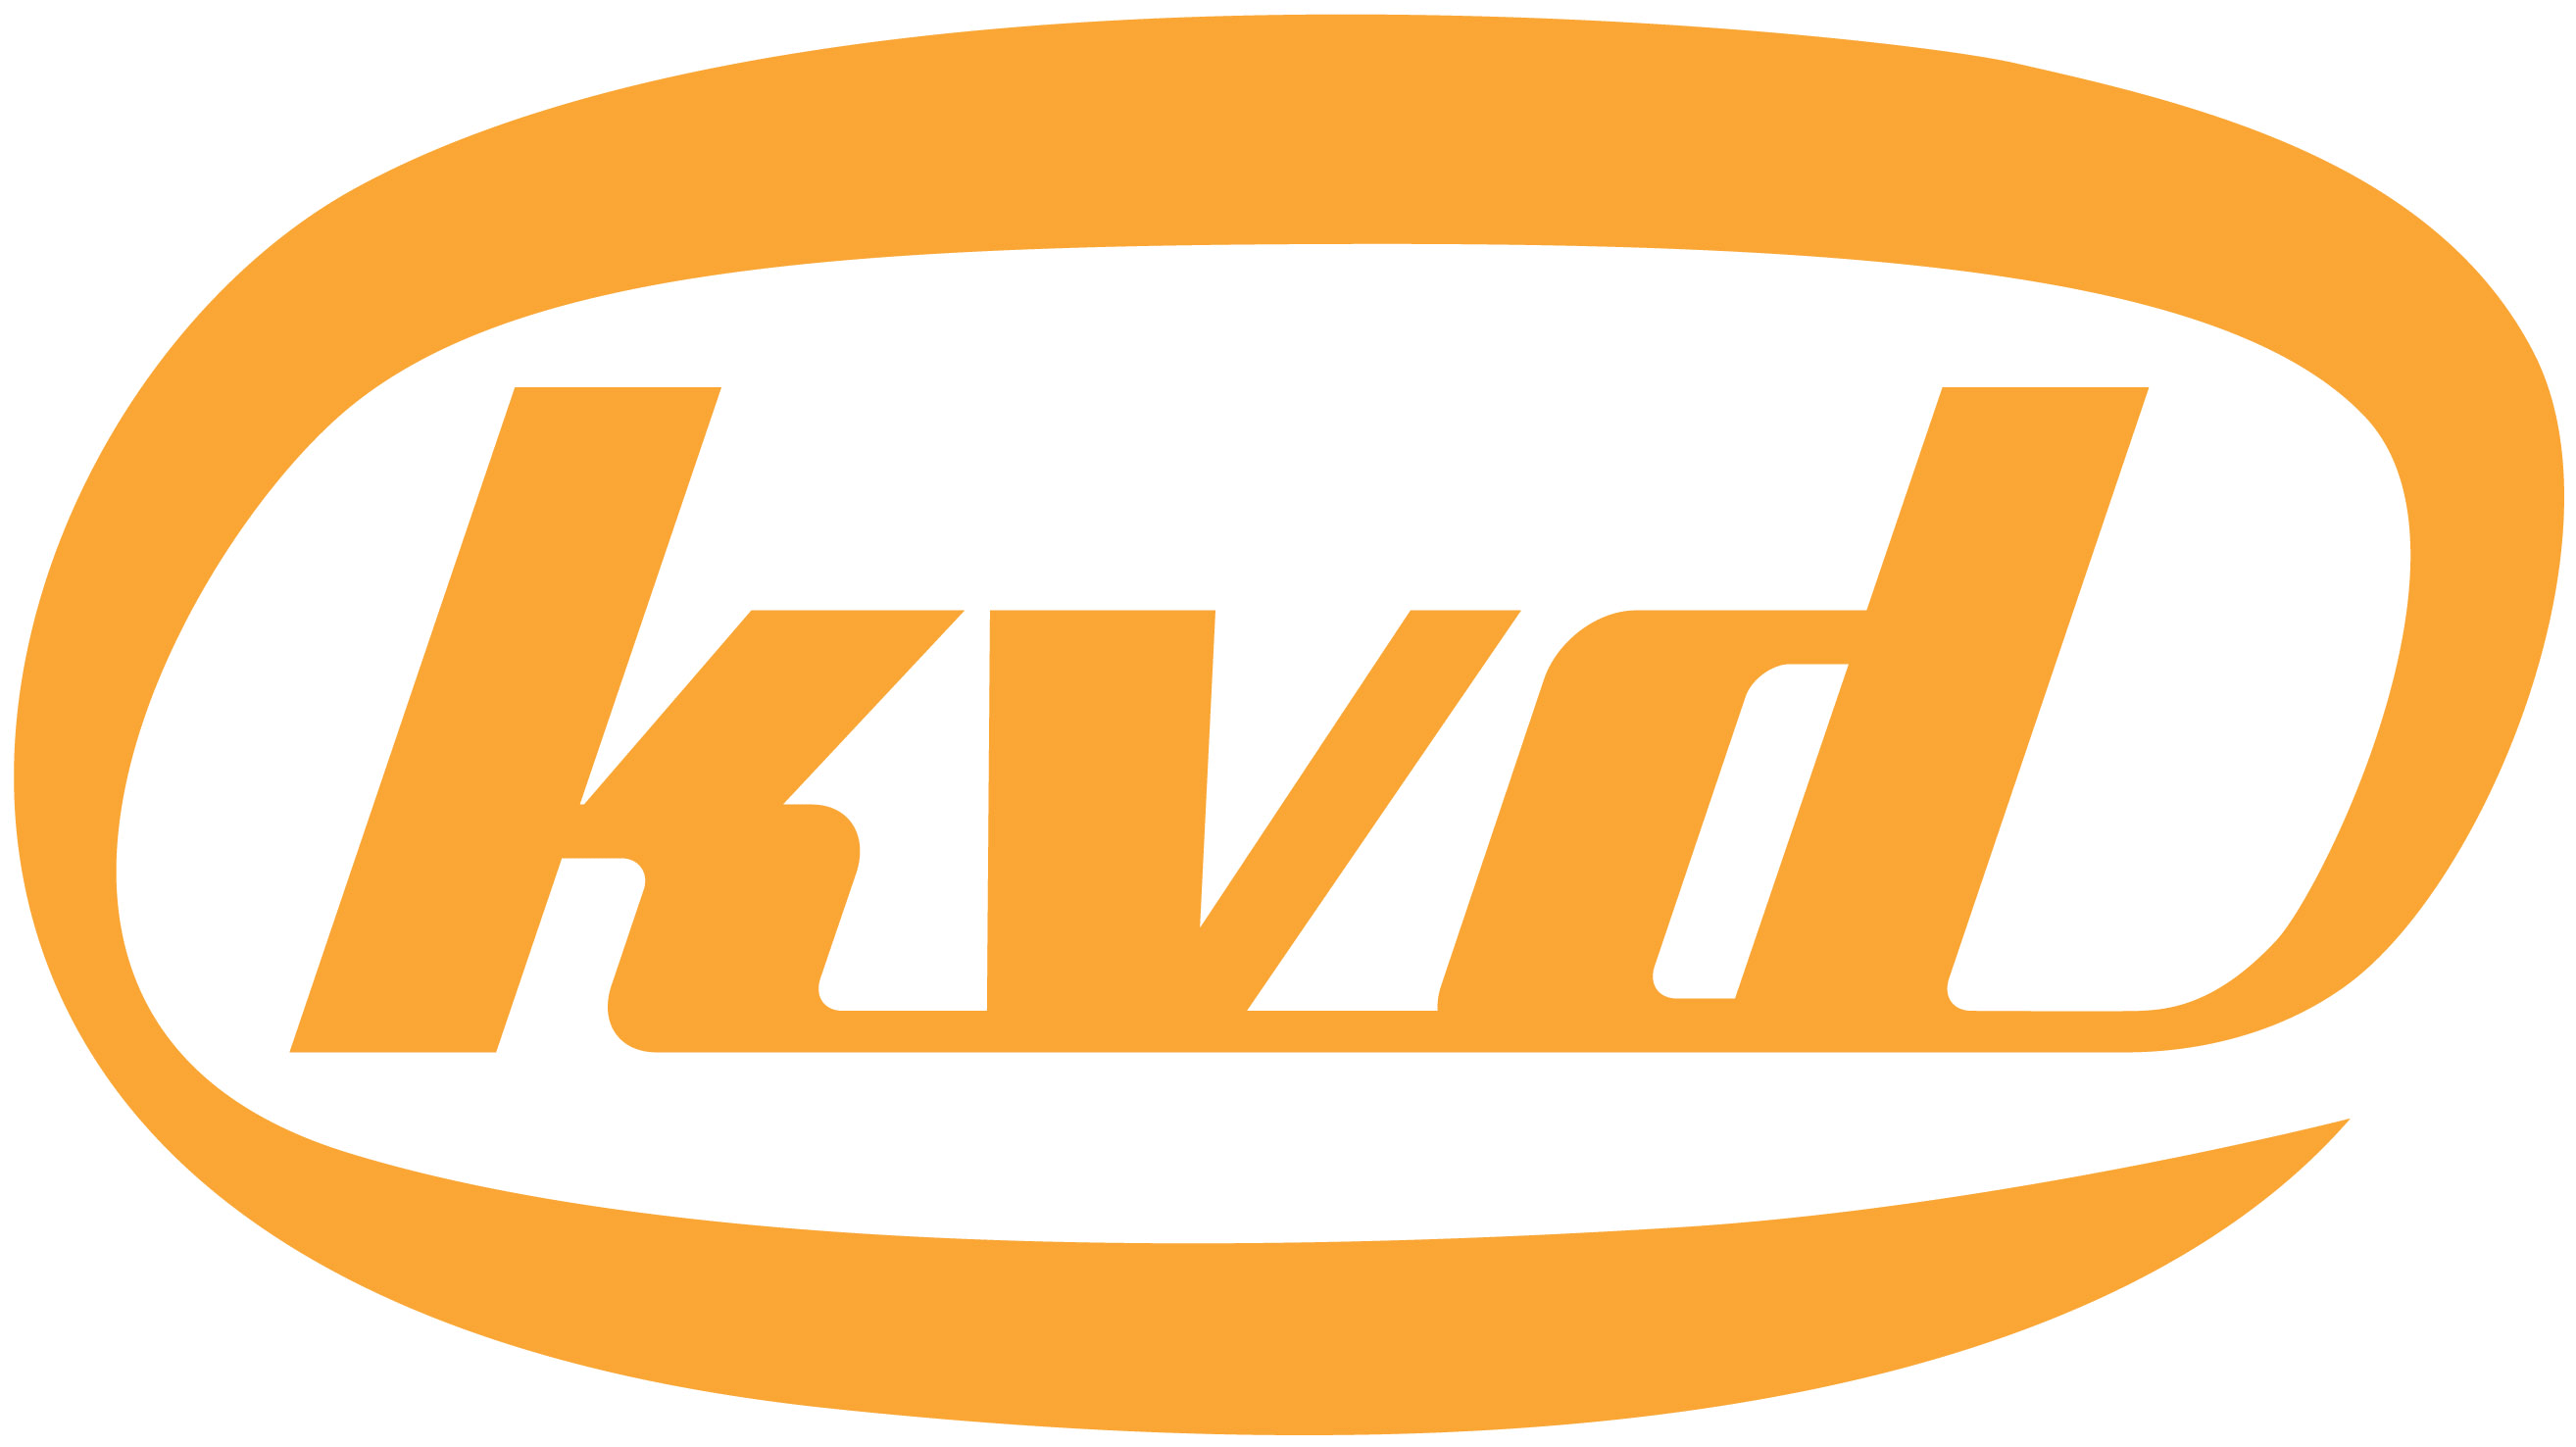 KVD Logo - File:KVD-WIKI.png - Wikimedia Commons